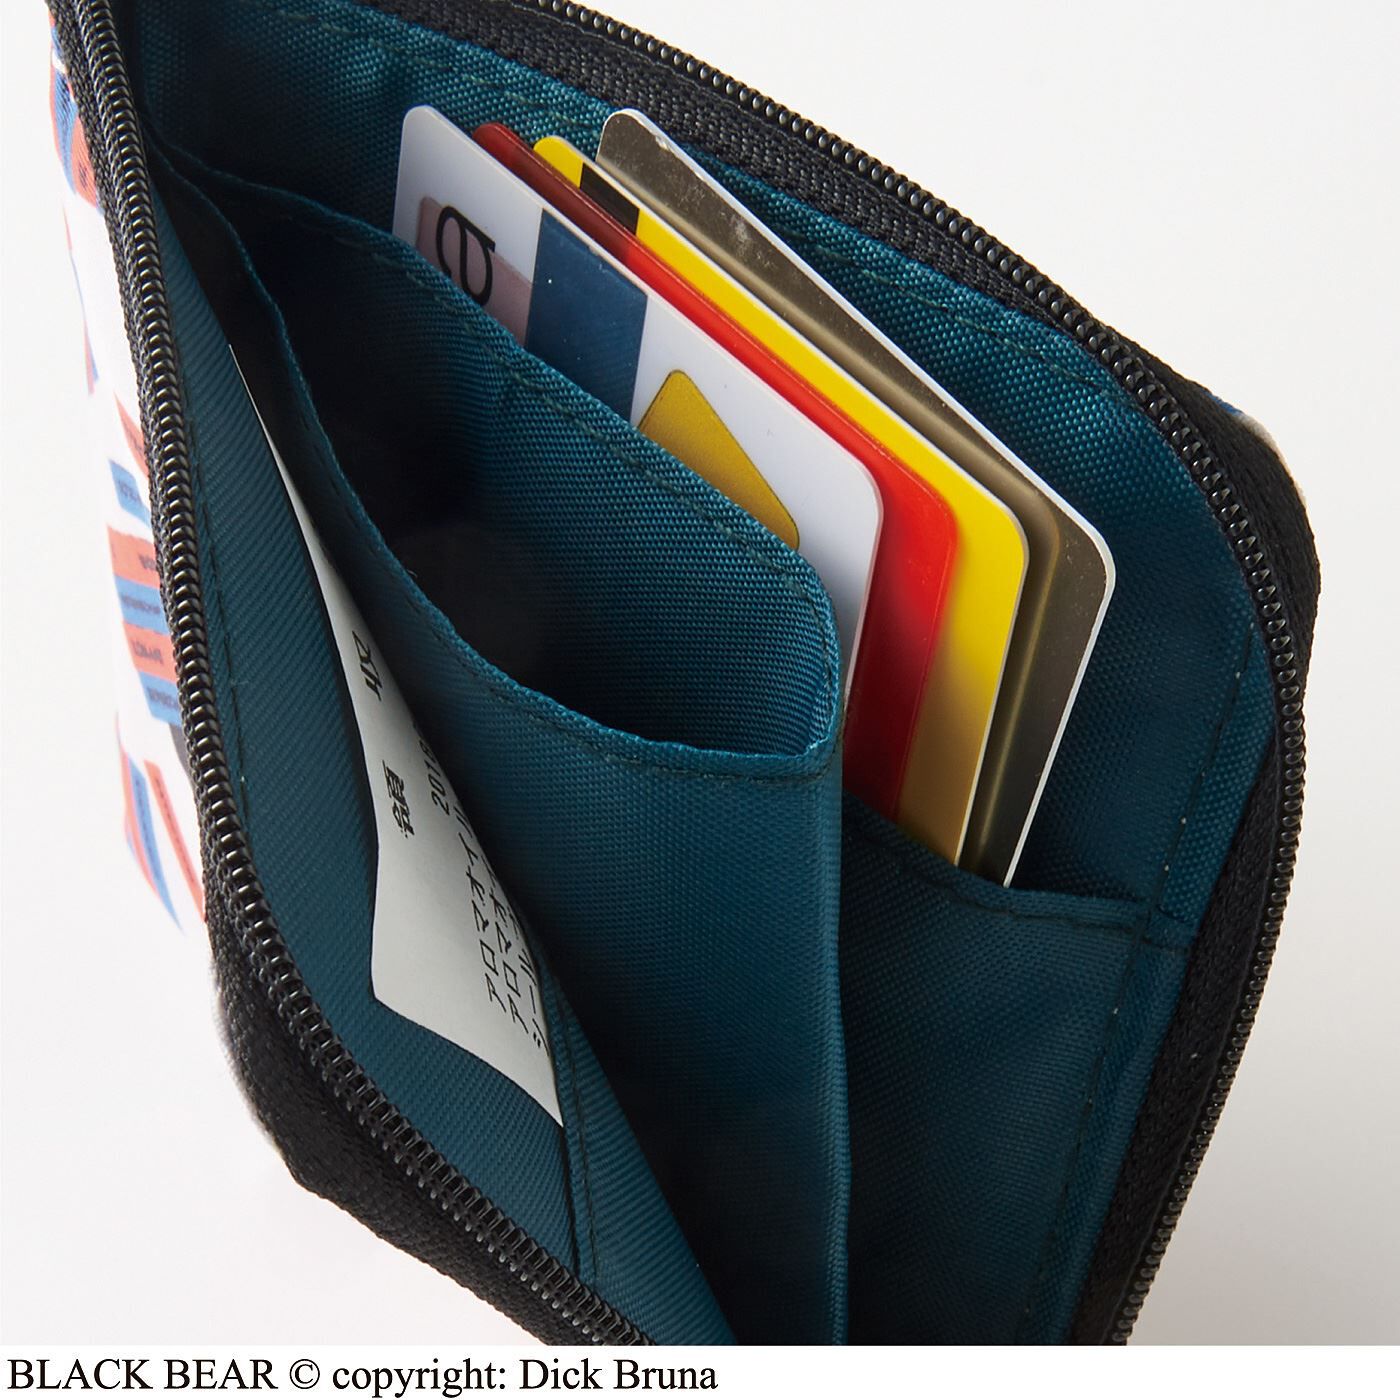 Real Stock|ブラック・ベア　L字型ファスナーが便利なコンパクト財布|袋状の仕切りですっきり整とん。